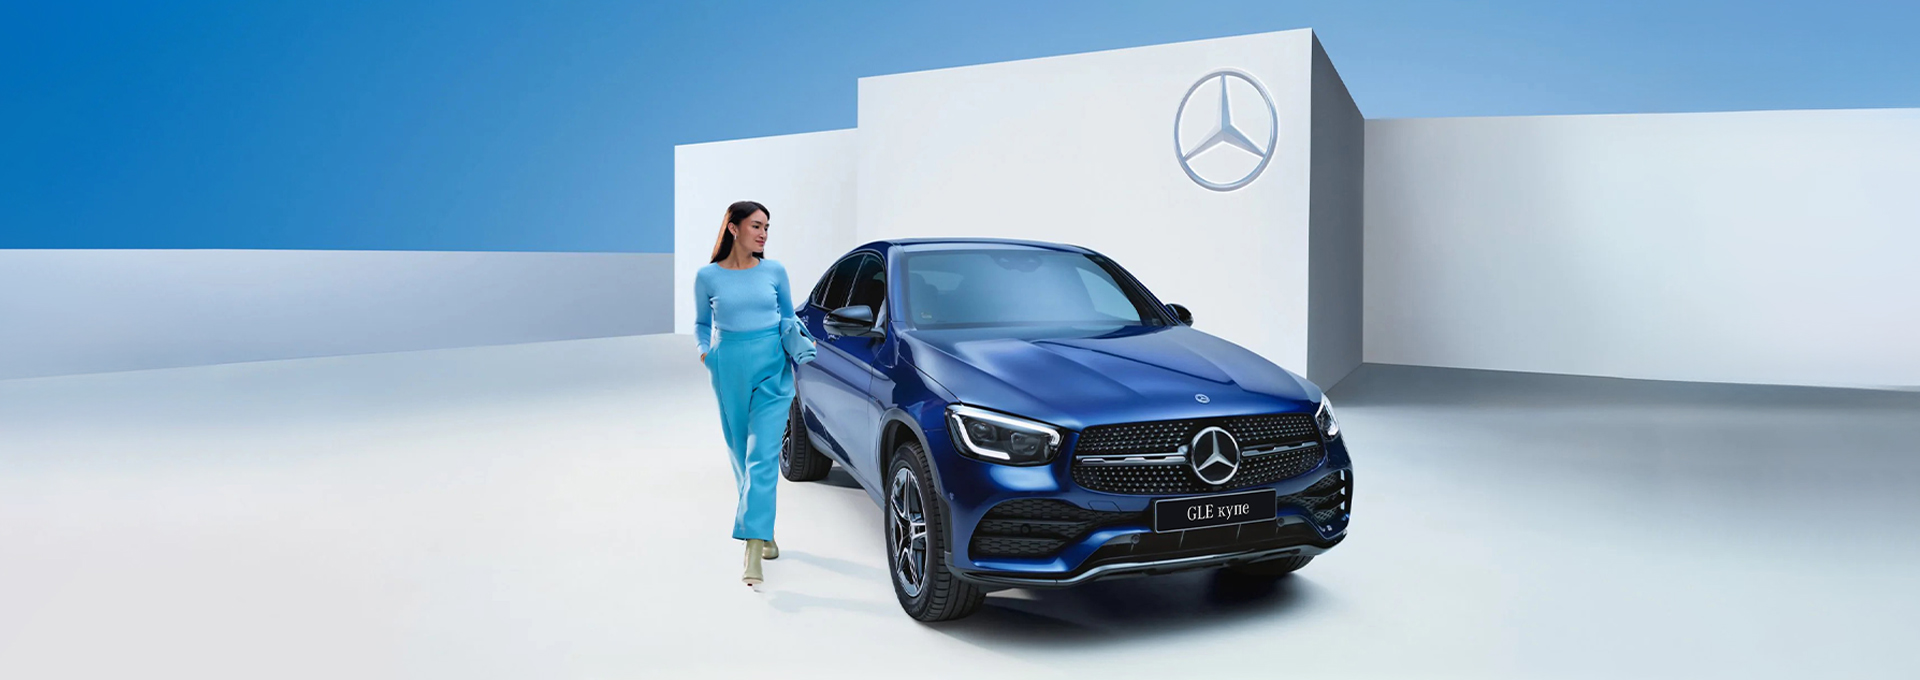 Mercedes-Benz: Ваши мечты <br> на гарантии и в наличии!